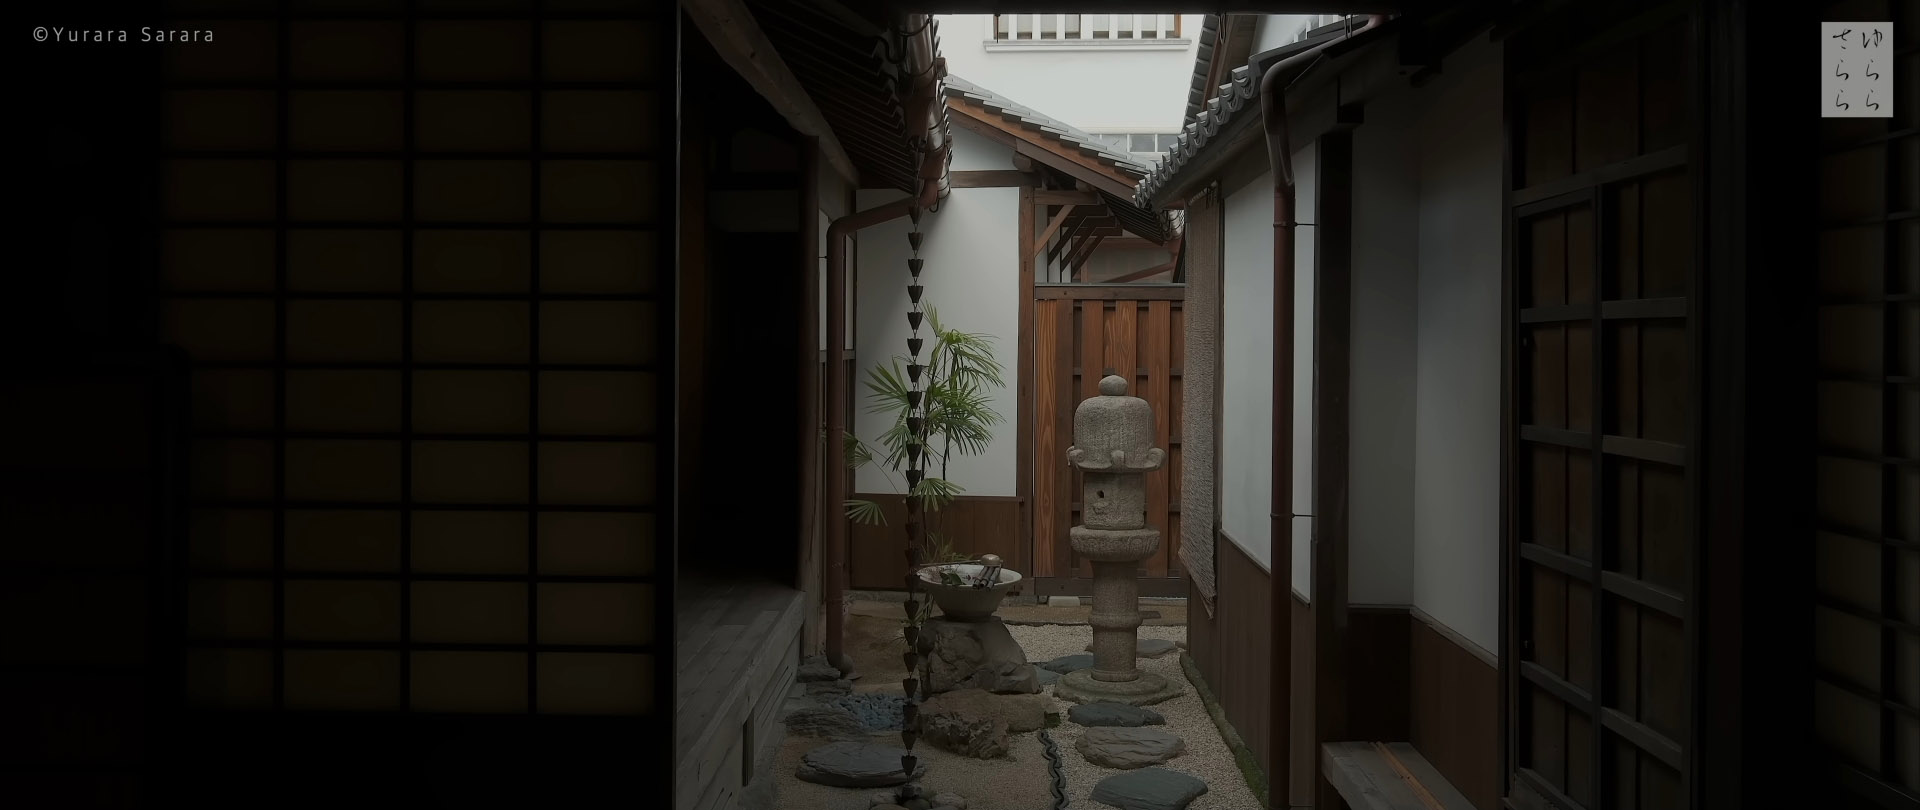 Wabi-Sabi-侘寂庭院,侘寂庭院,日本,侘寂设计,侘寂视频下载,日式侘寂庭院